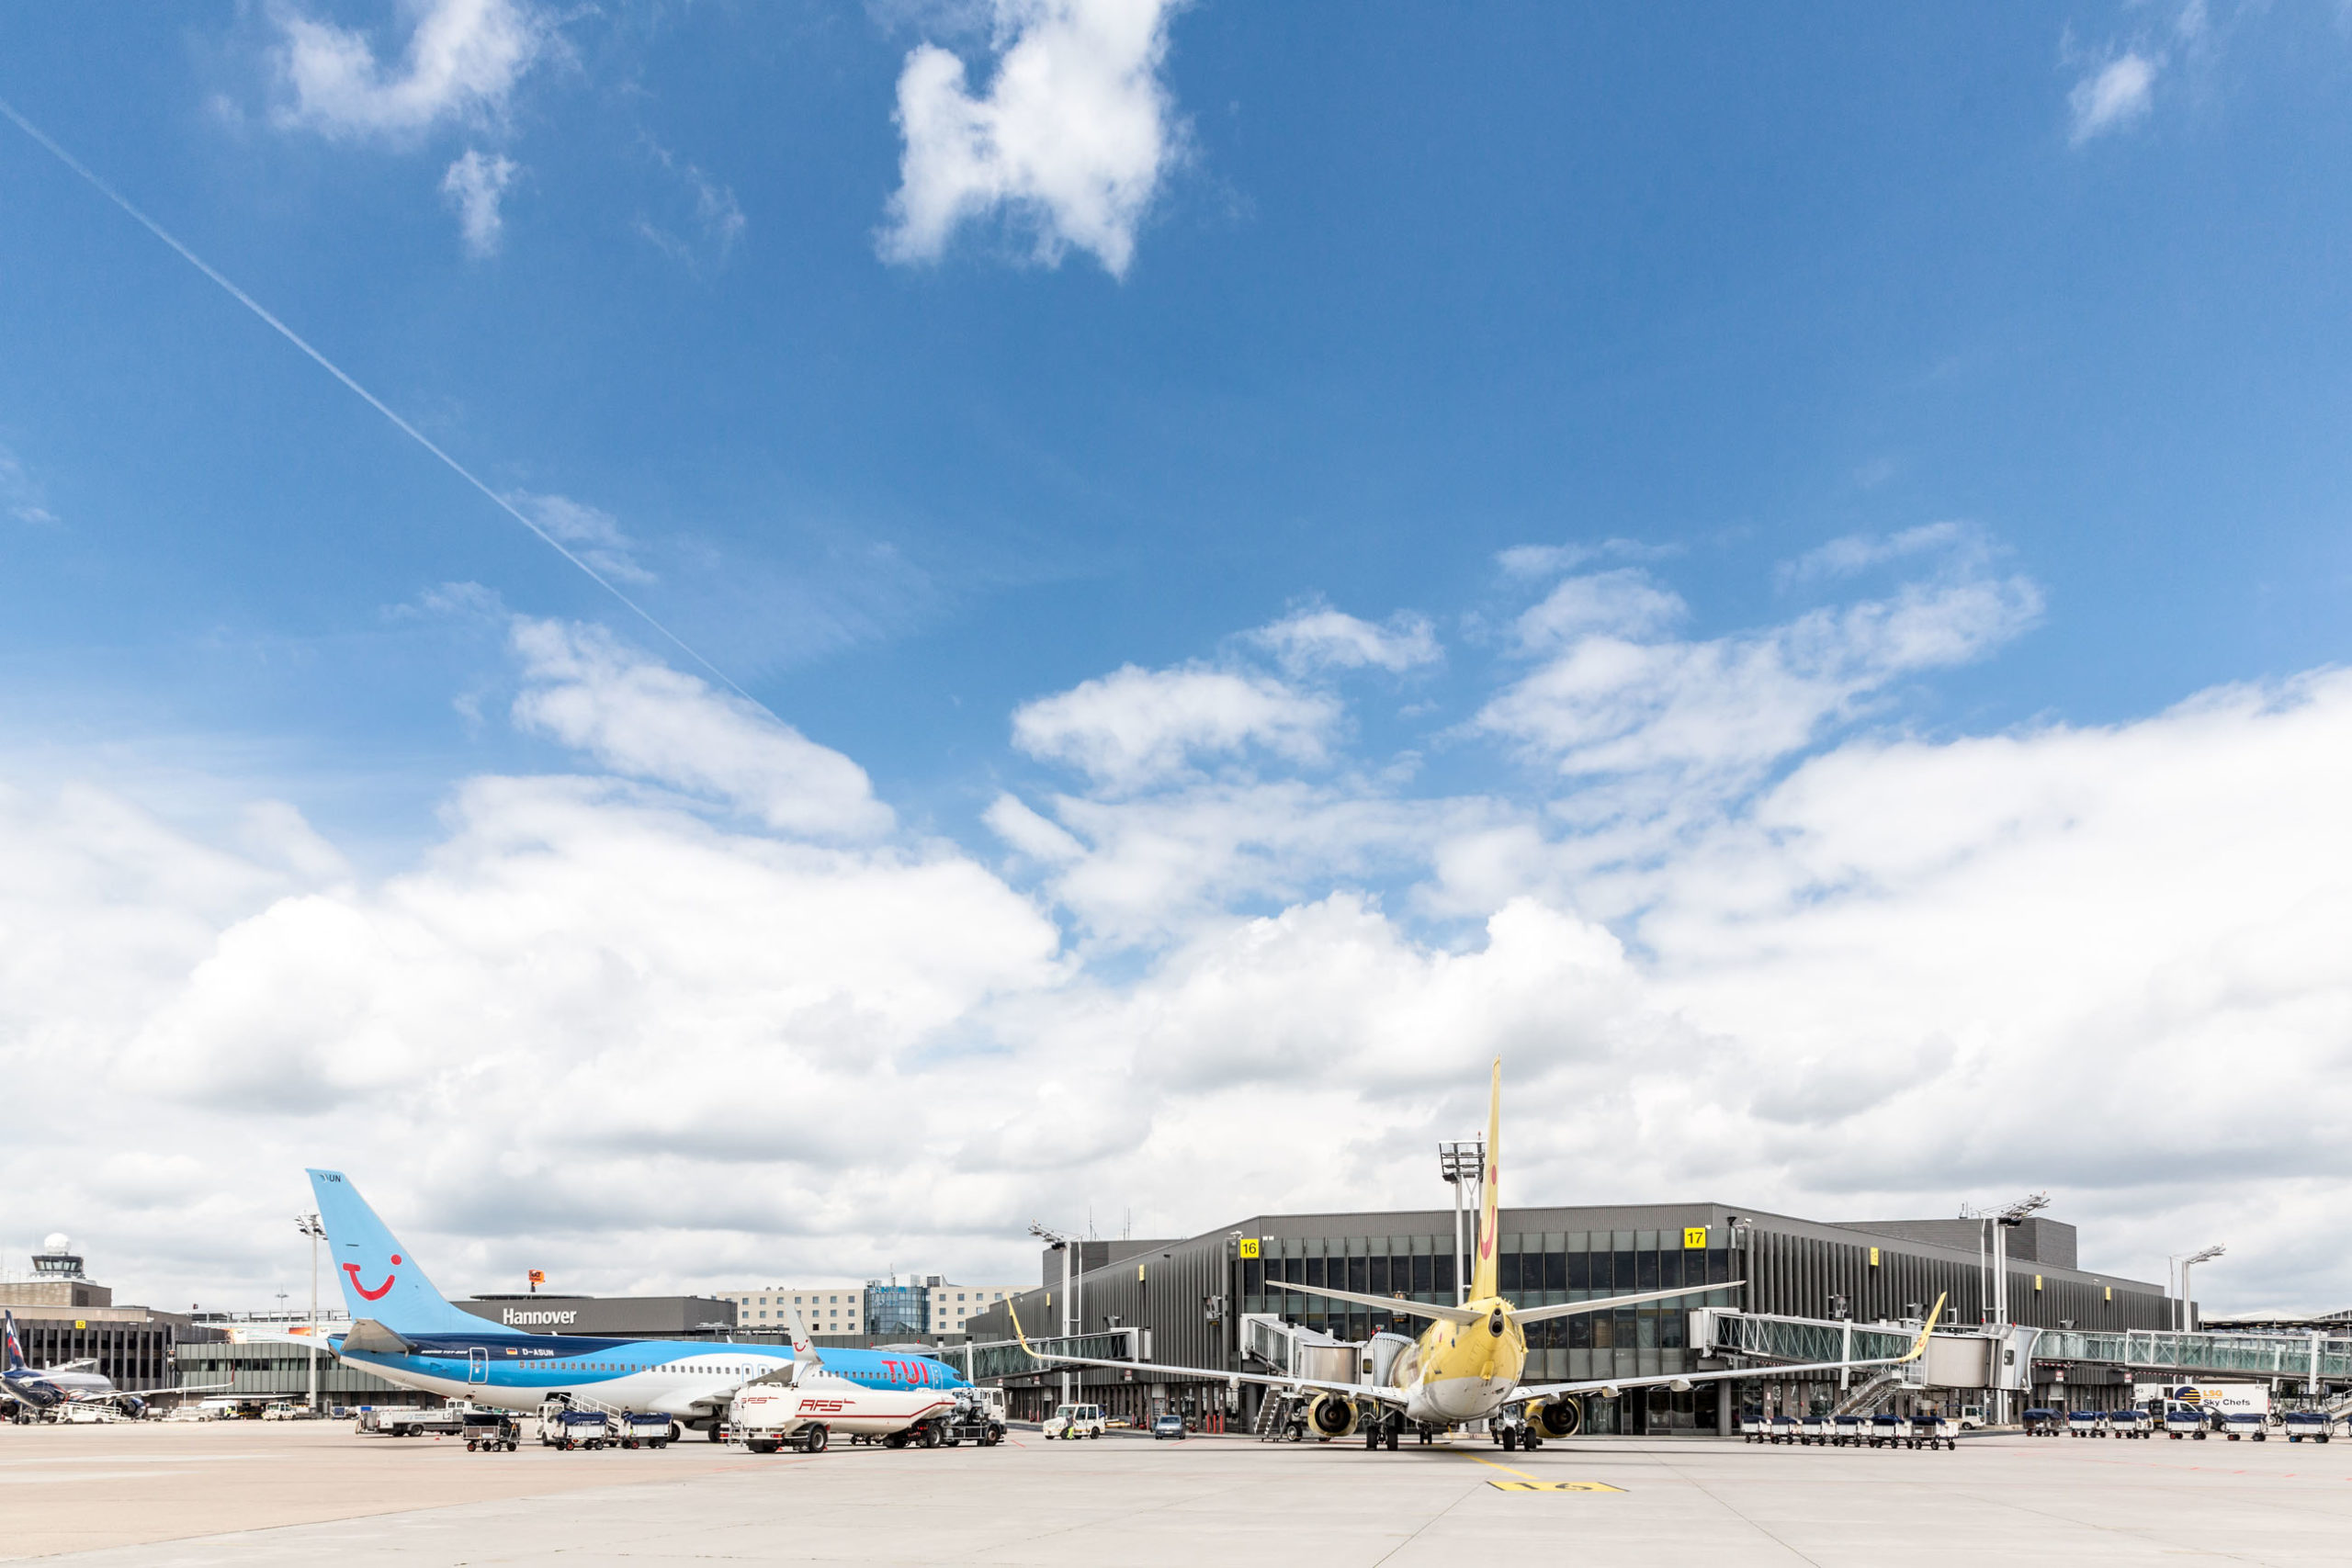 Der Hannover Airport hat im Jahr 2019 einen neuen Rekord bei der Zahl der Flugpassagiere erreicht. Erwartet wird ein Ergebnis von 6,3 Mio. Reisenden, nach 5,87 Mio. im Jahr 2017. Flughafen Hannover-Langenhagen GmbH